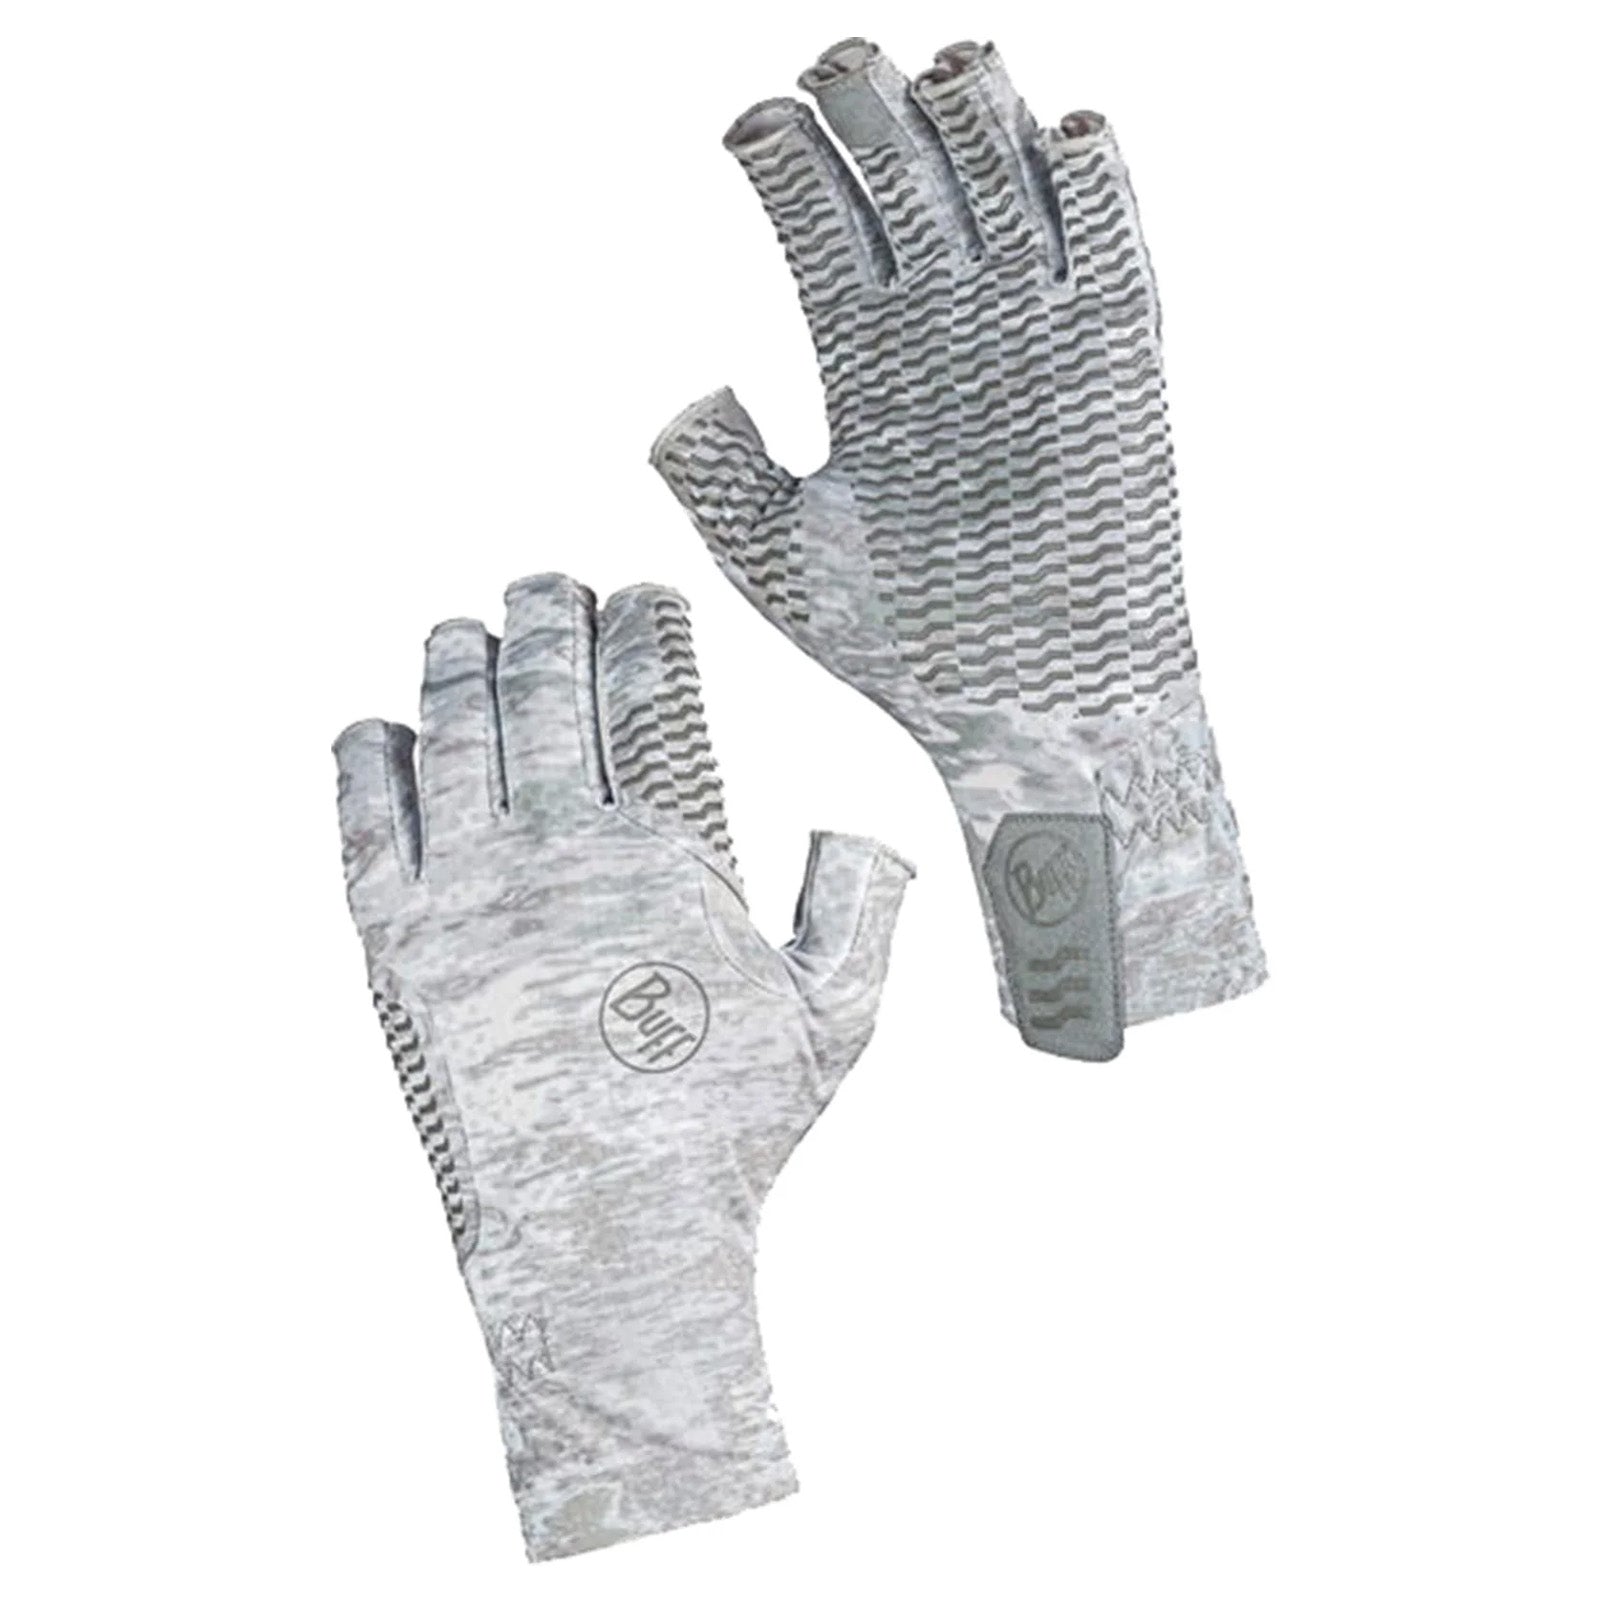 
Buff Aqua Adult Gloves 